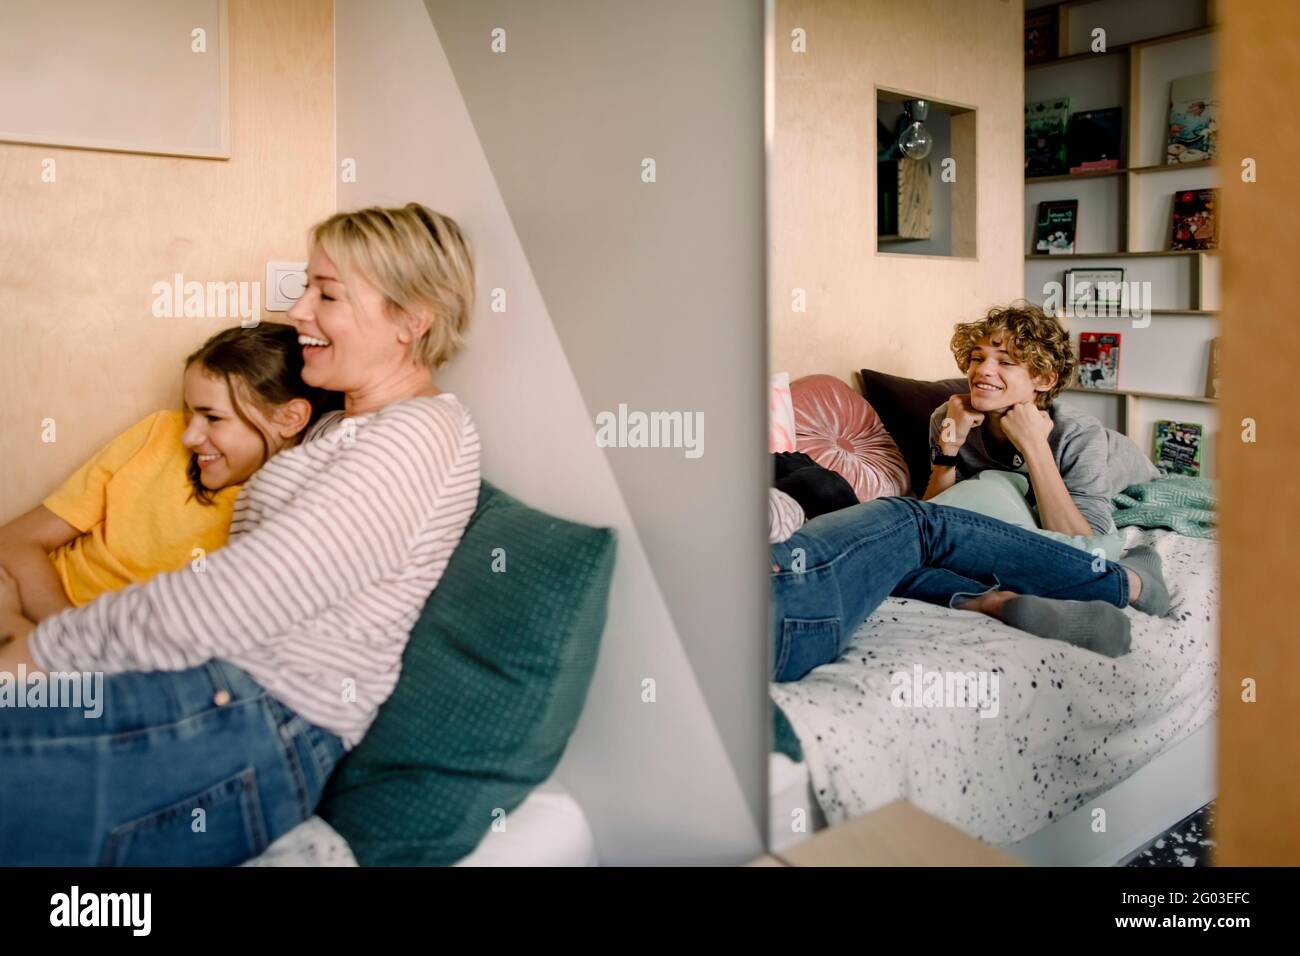 Lächelnder Junge, der auf dem Bett liegt, während er Mutter und Schwester durch den Spiegel betrachtet Stockfoto